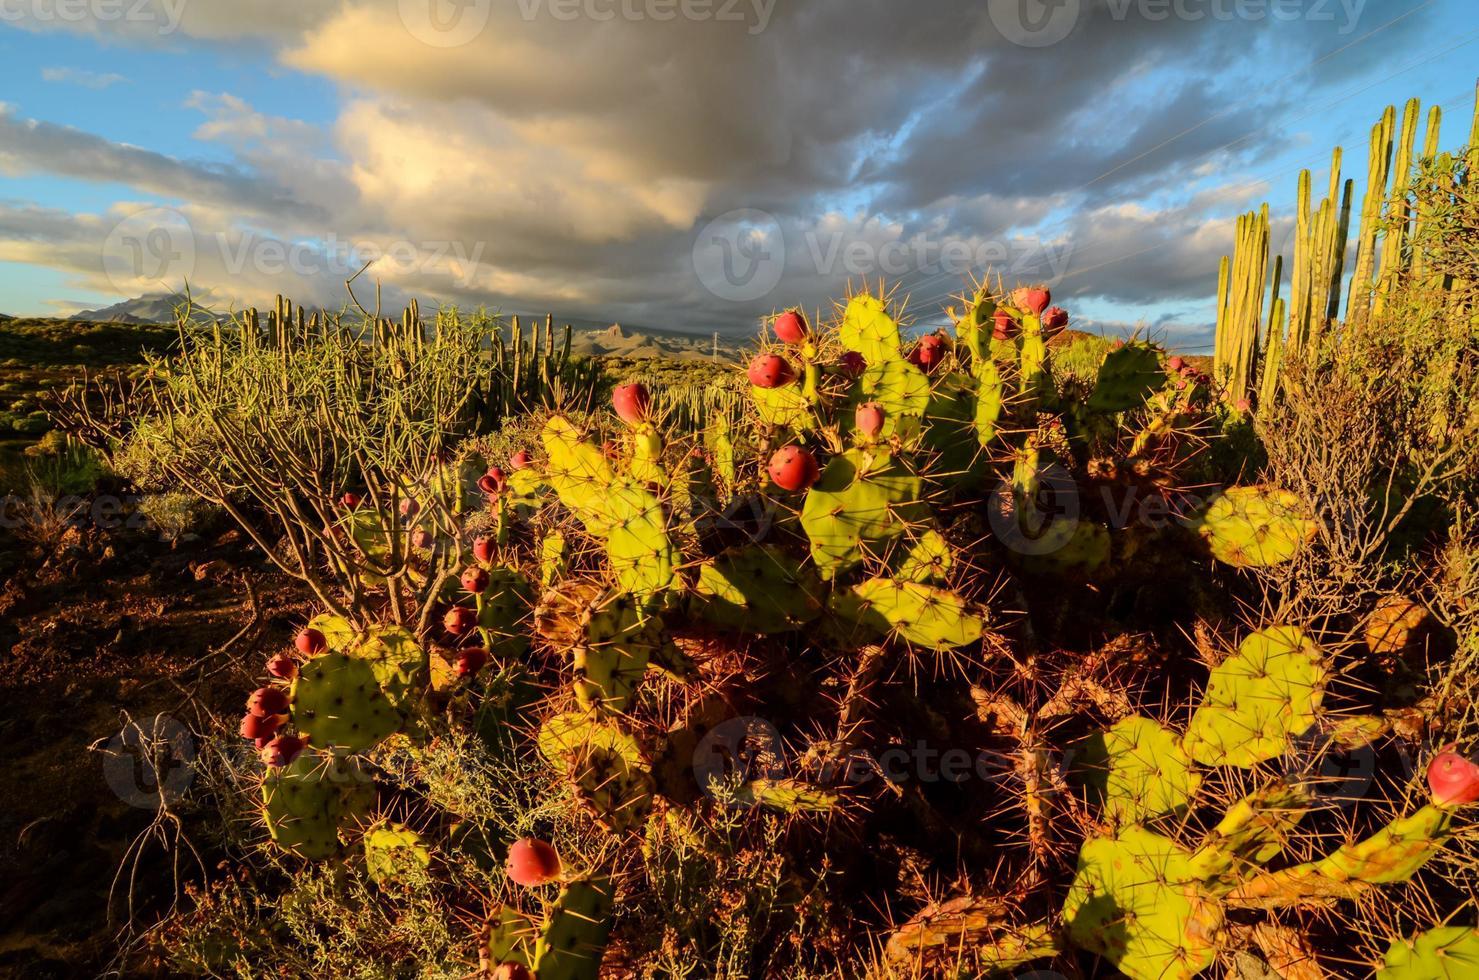 Cacti on desert vegetation photo